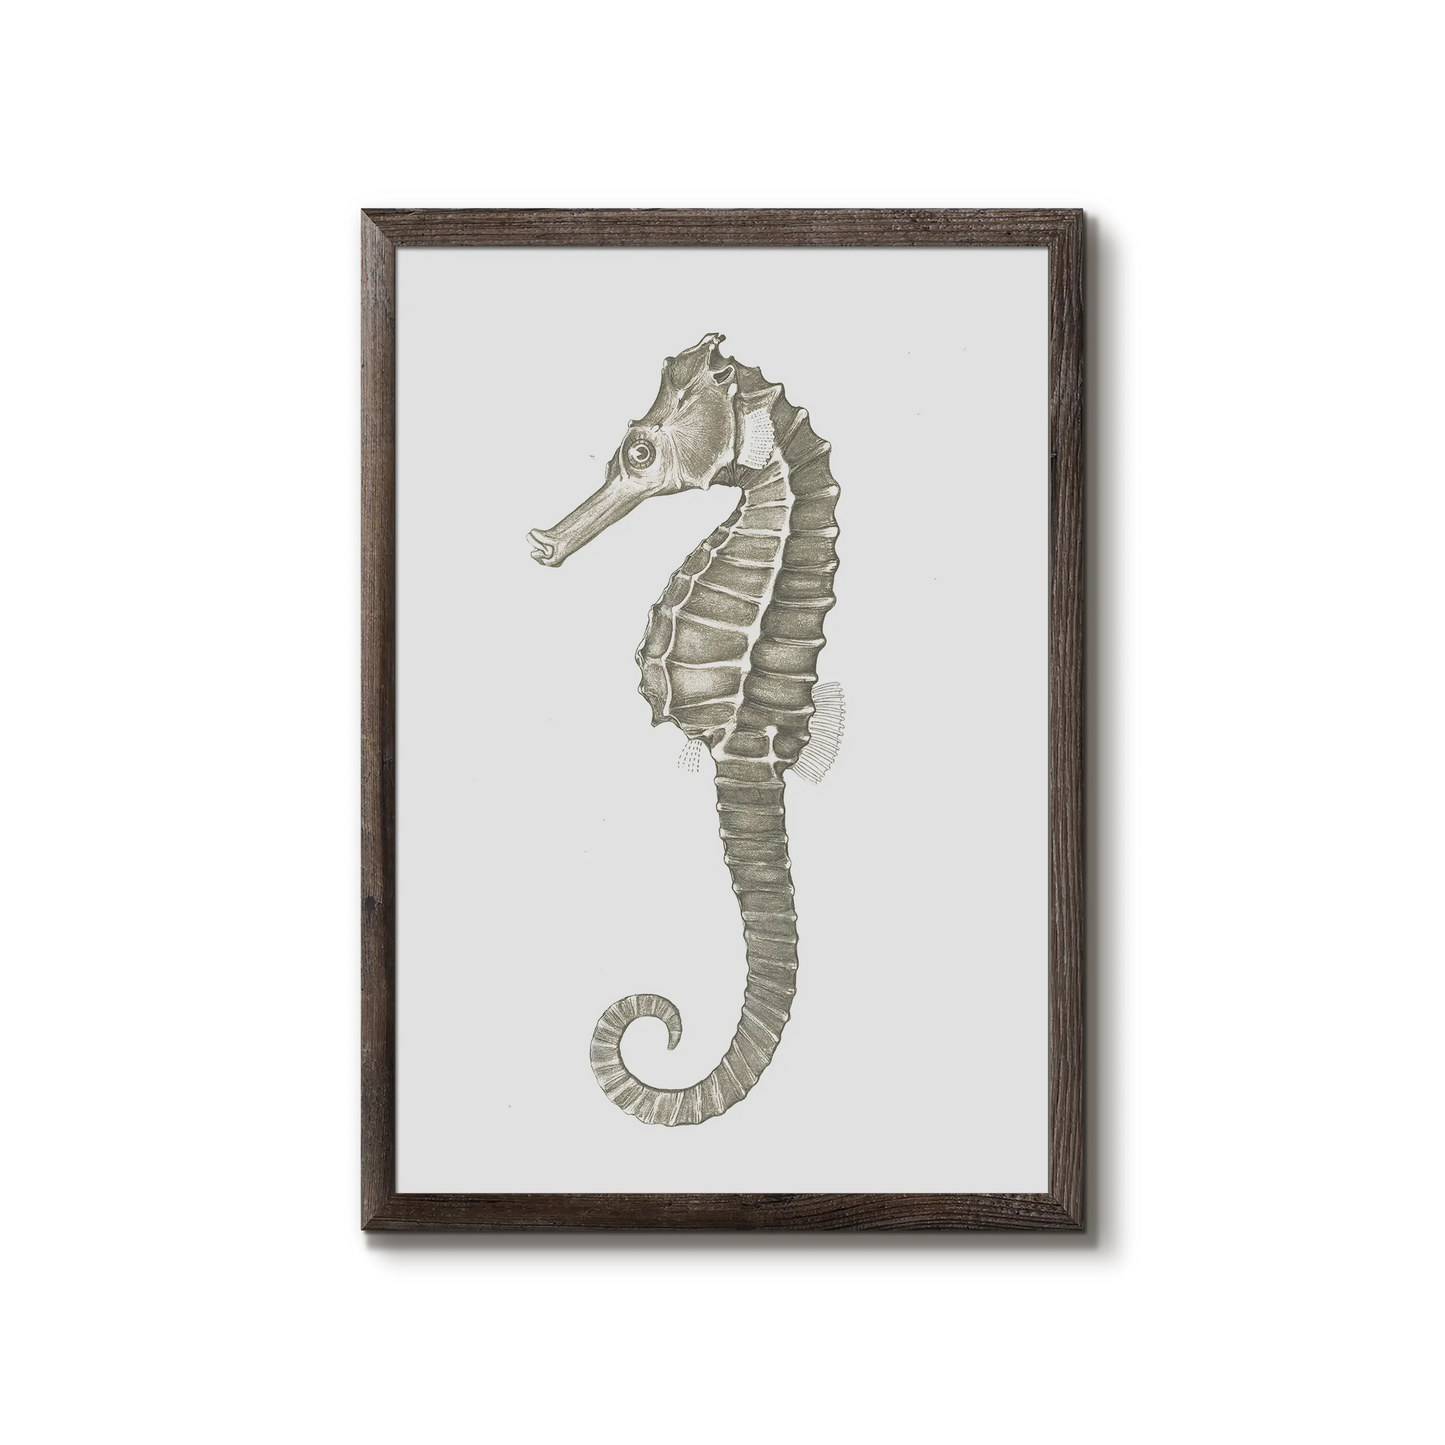 Hippocampus kuda - The seahorse